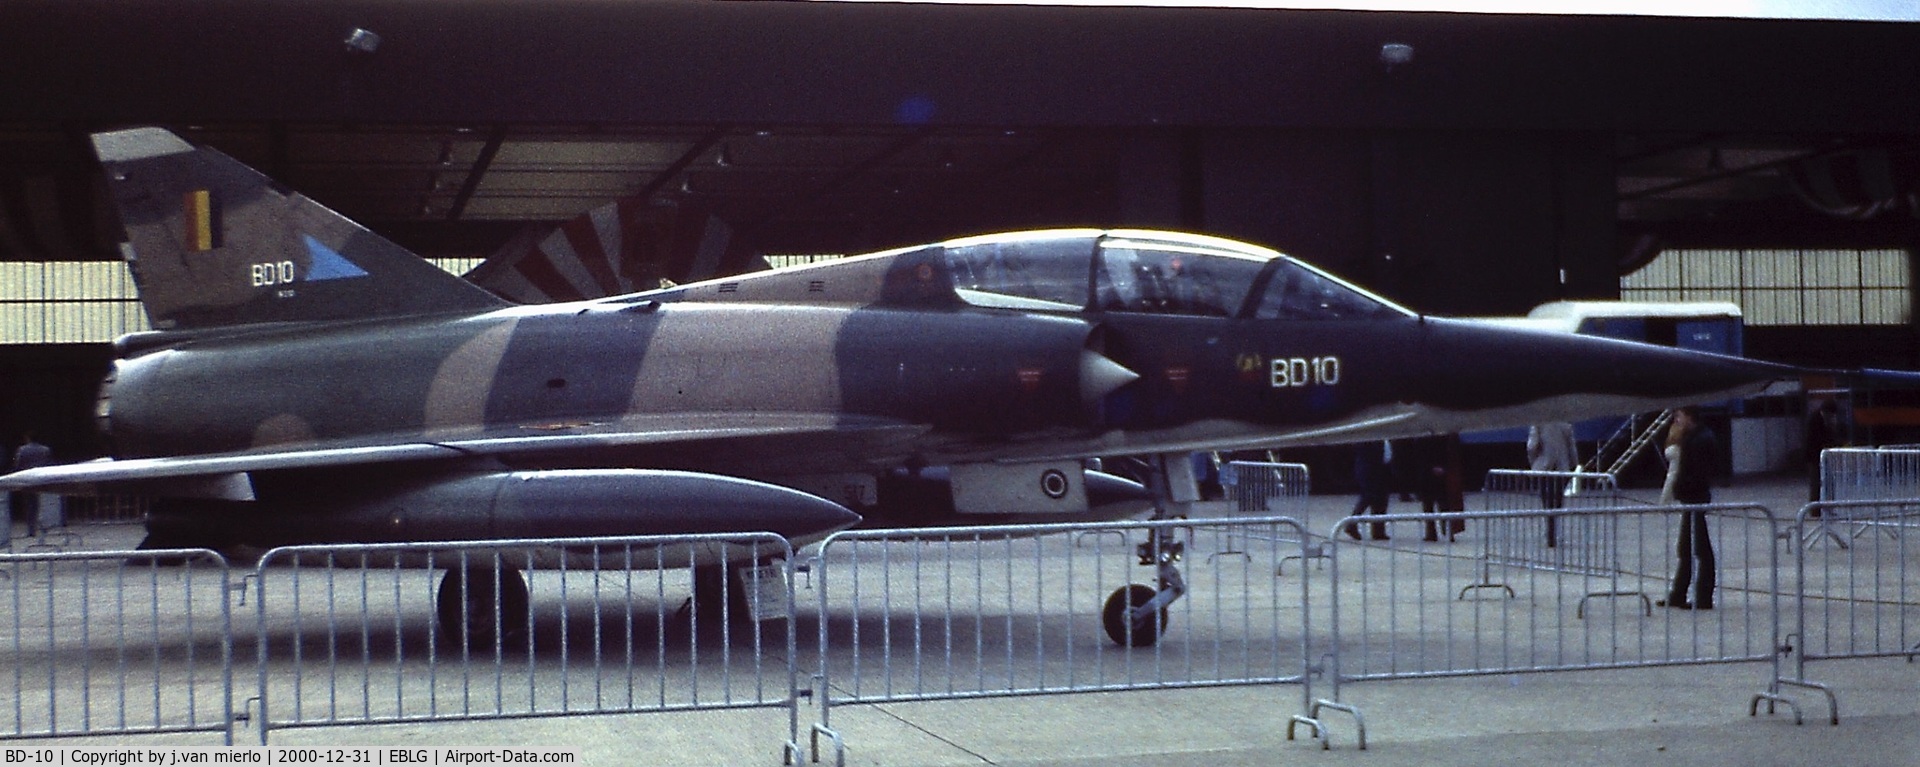 BD-10, 1971 Dassault Mirage 5BD C/N 210, Bierset AB, Belgium Open Day '70s